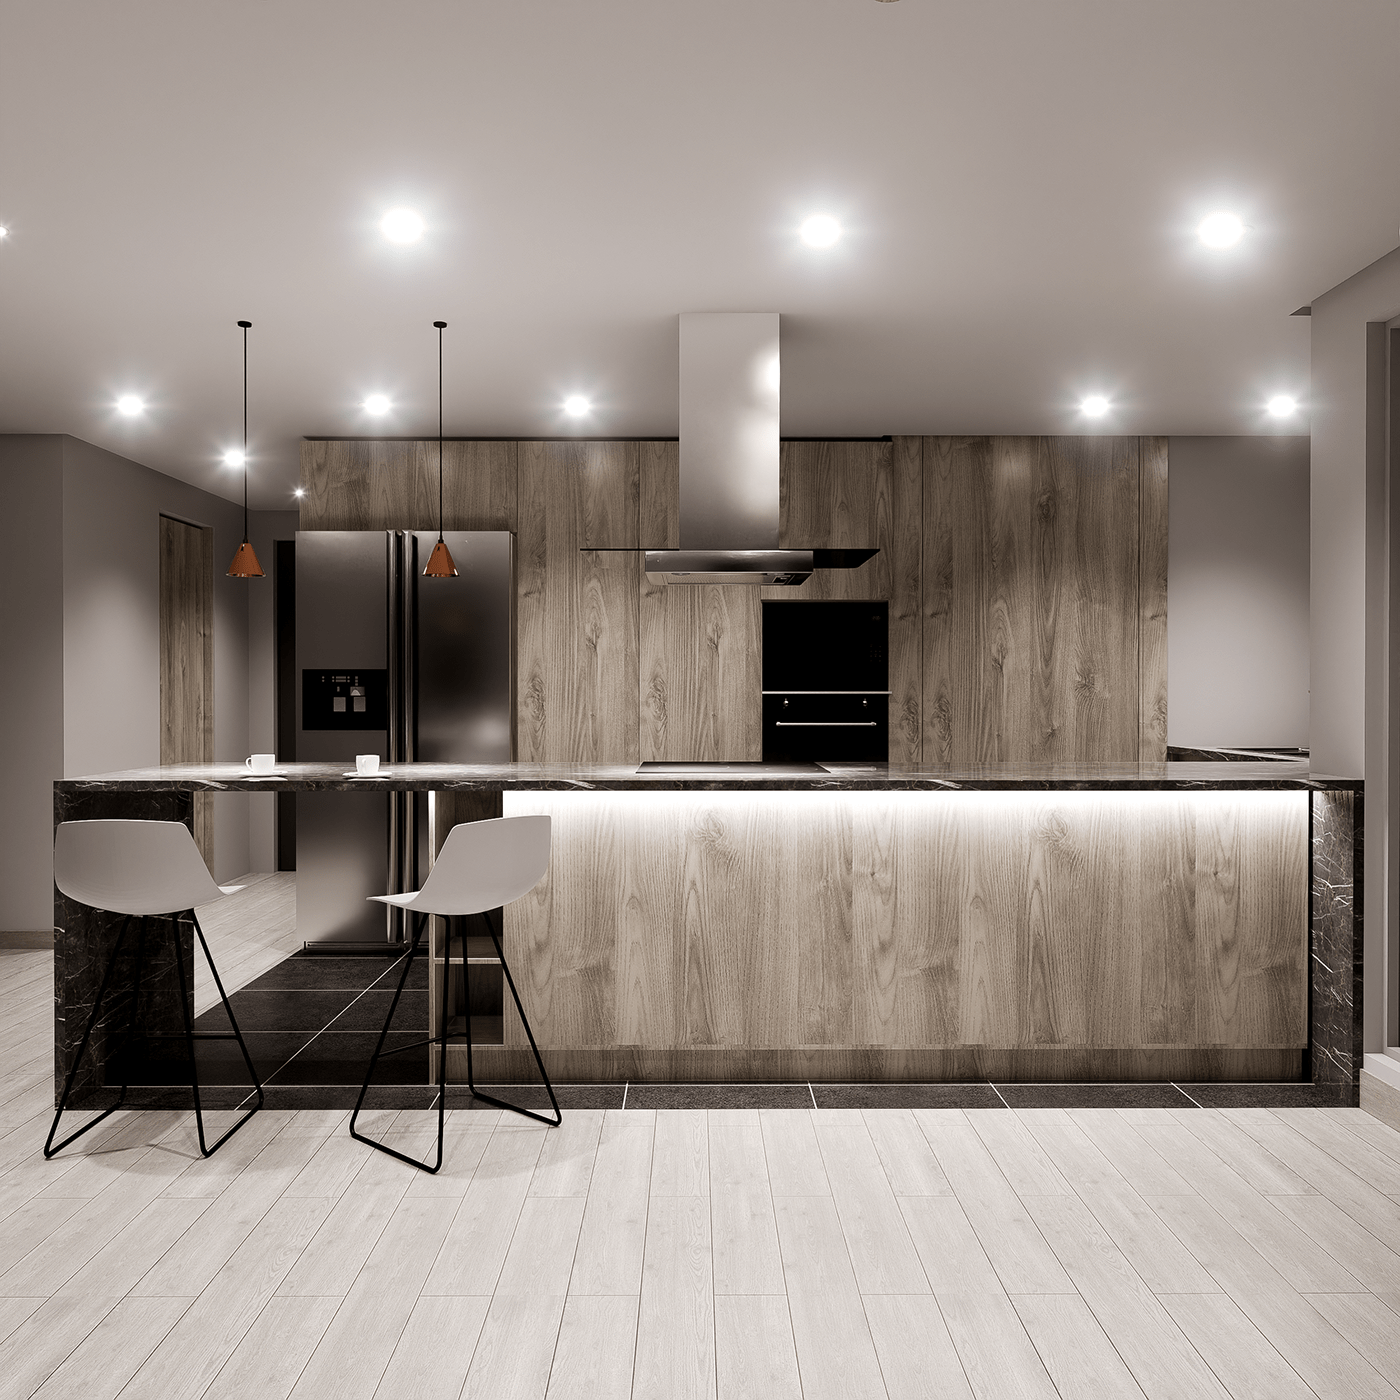 arquitectura cocina kitchen kitchen design archviz diseño diseñodeinteriores Interiorismo D5 Render